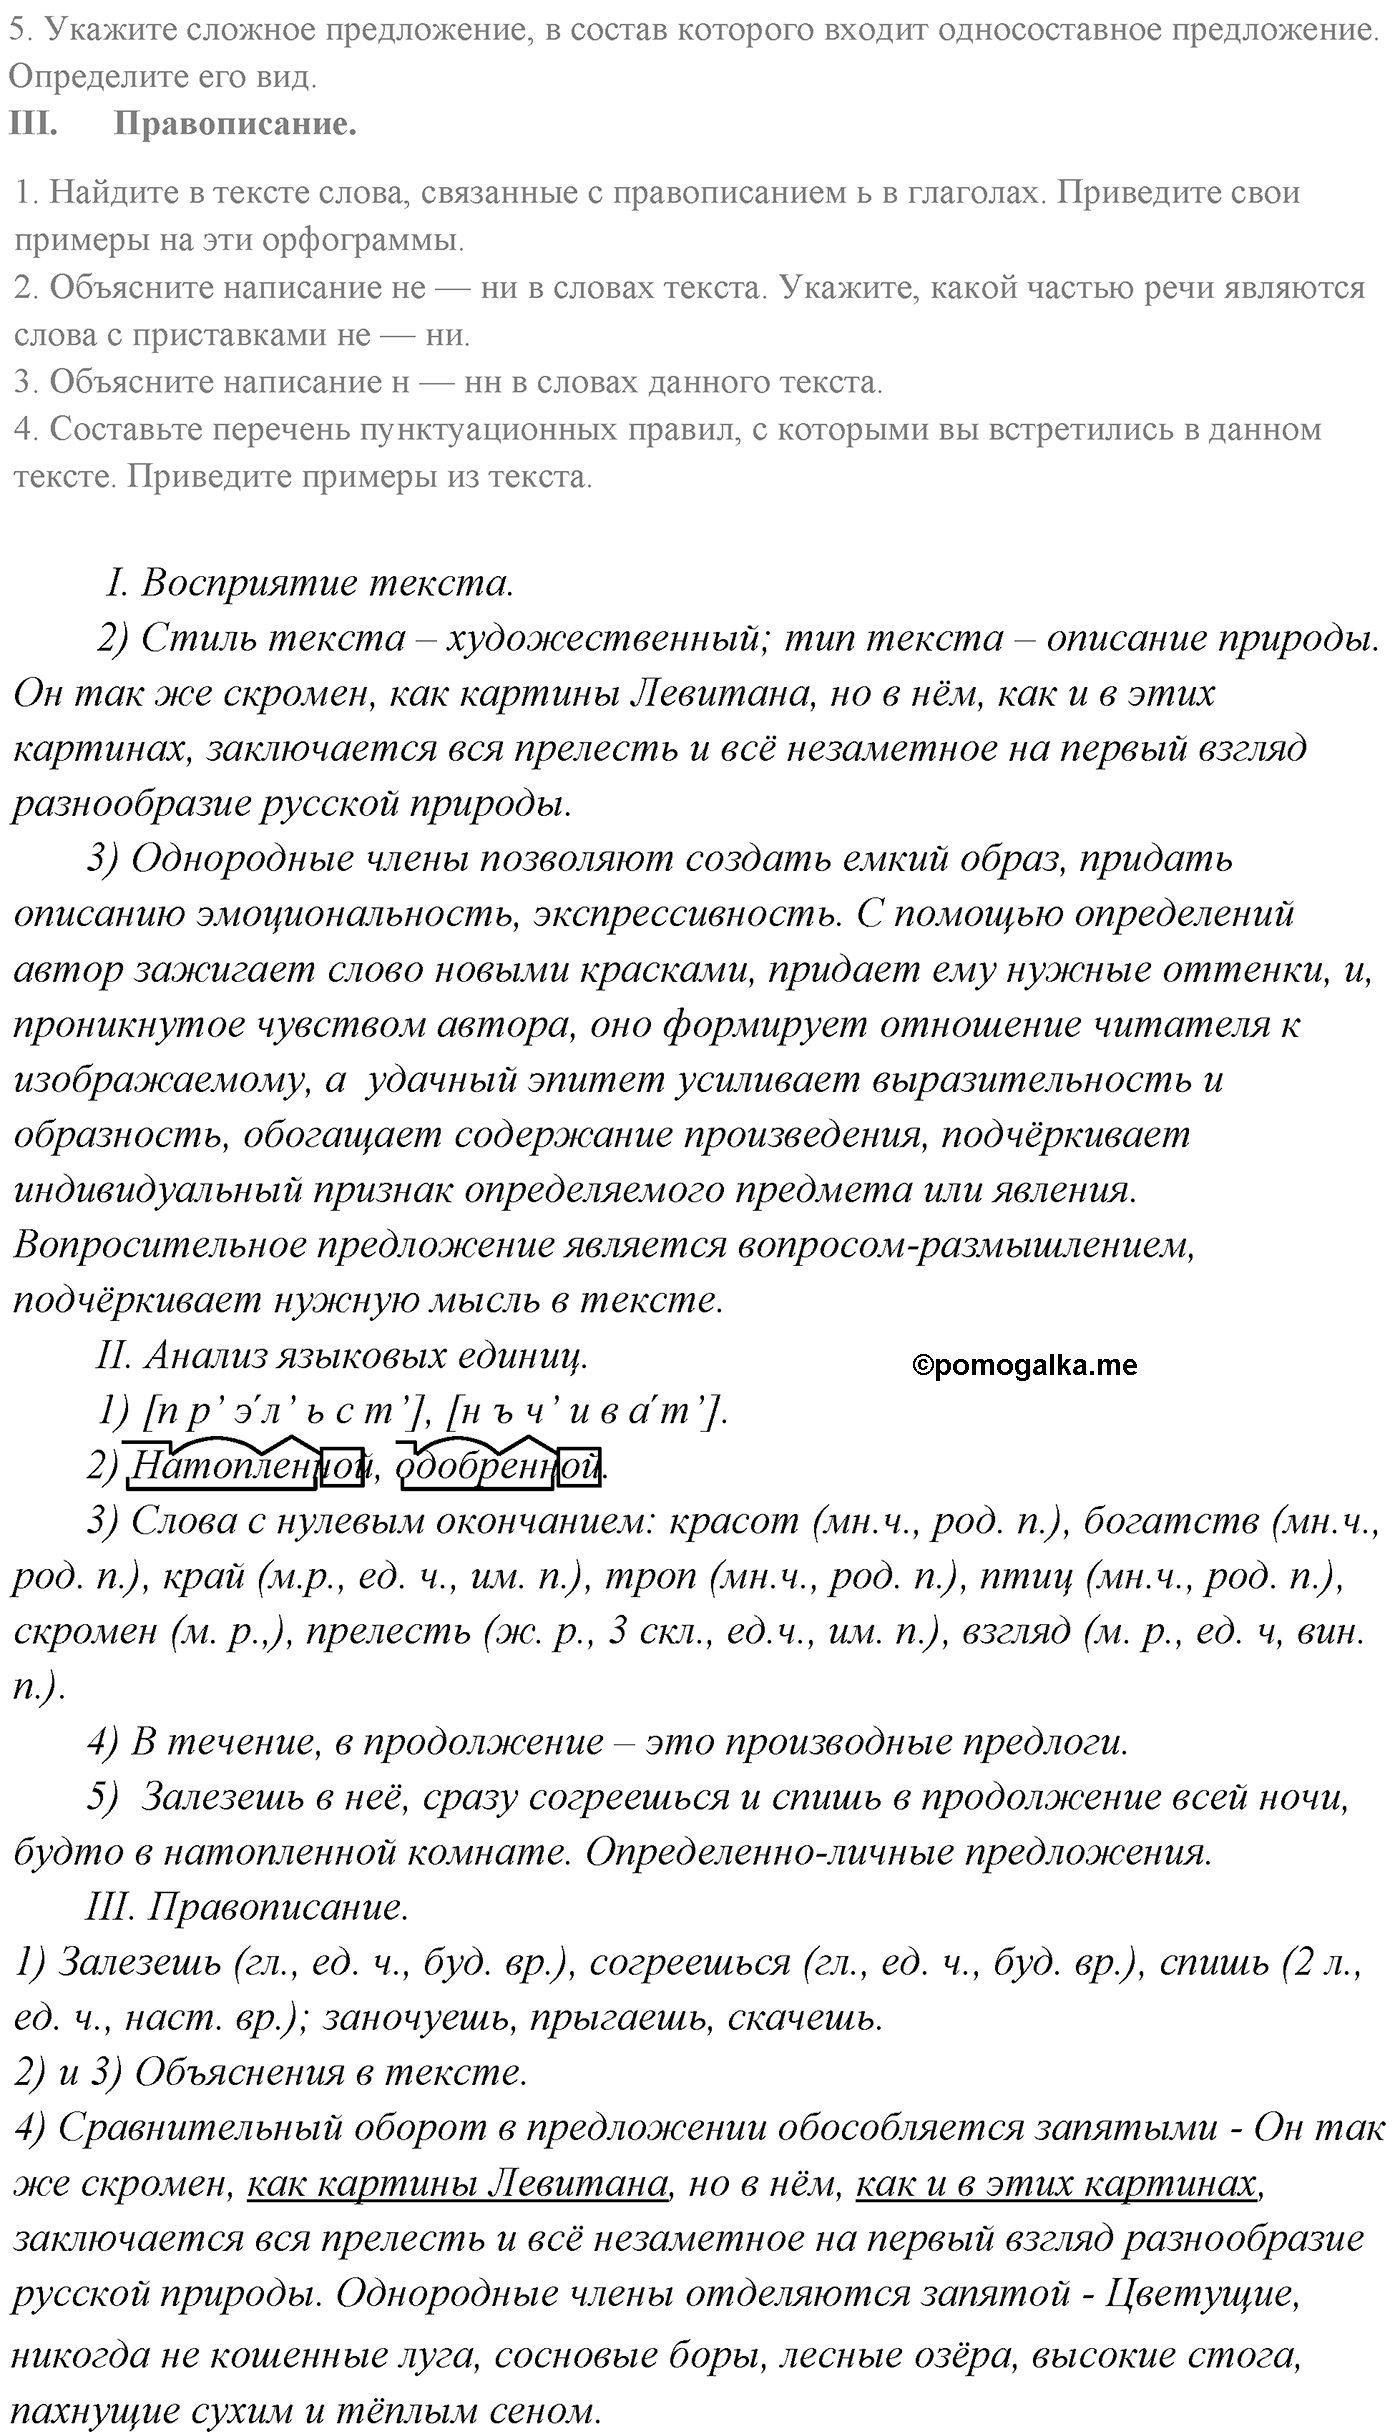 страница 228 номер 305 русский язык 9 класс Разумовская 2011 год